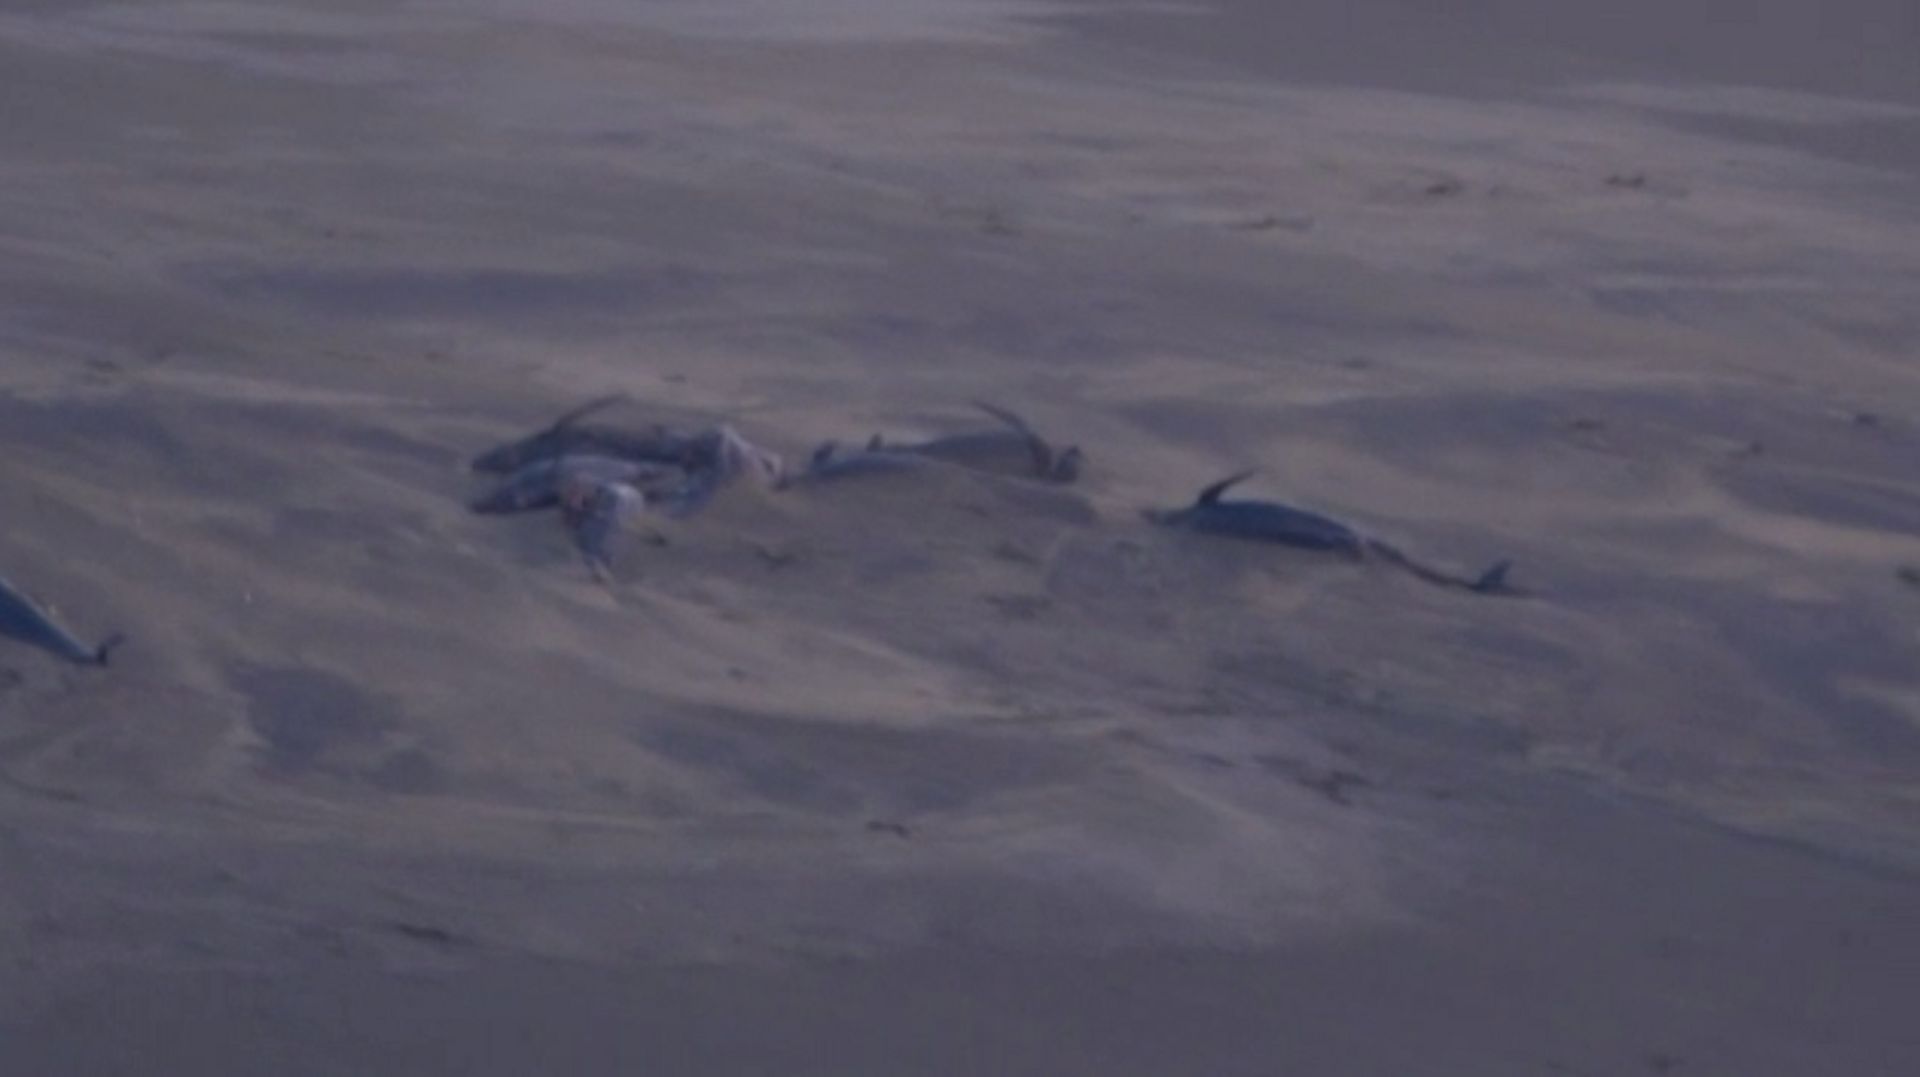 Un cinquantaine de dauphins échoués sur une plage en Islande